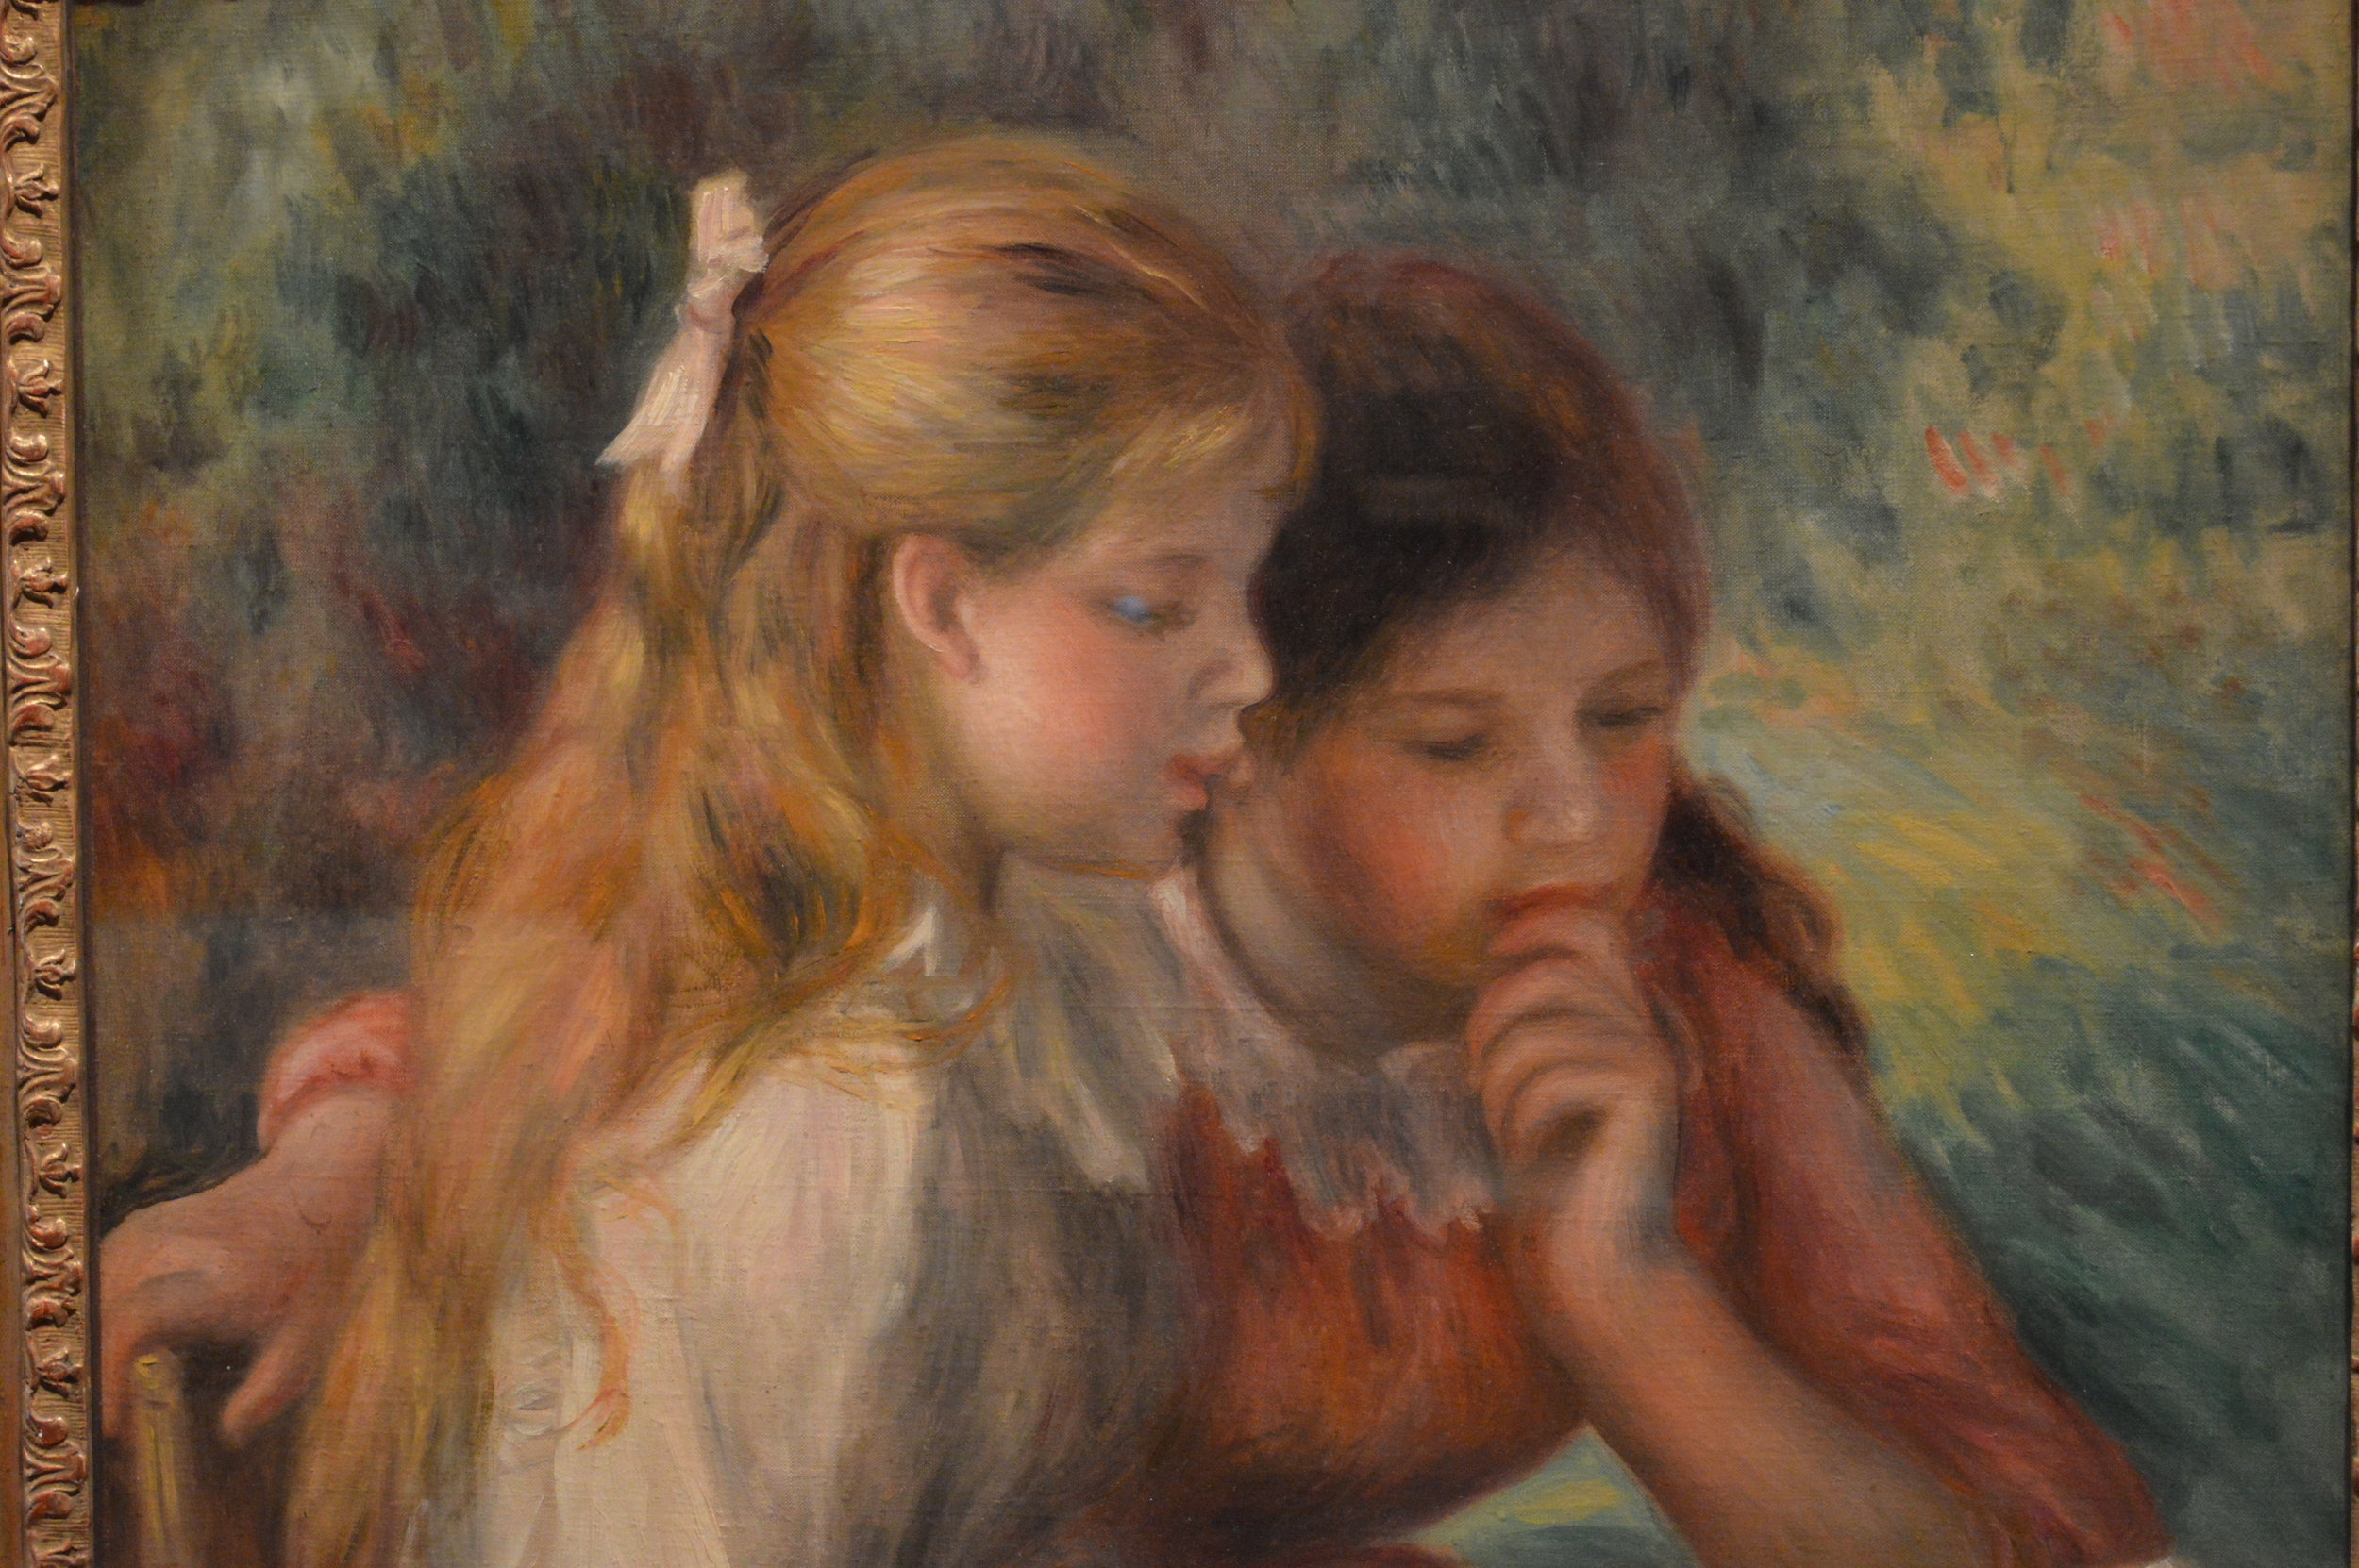 Renoir Two Girls painting.JPG